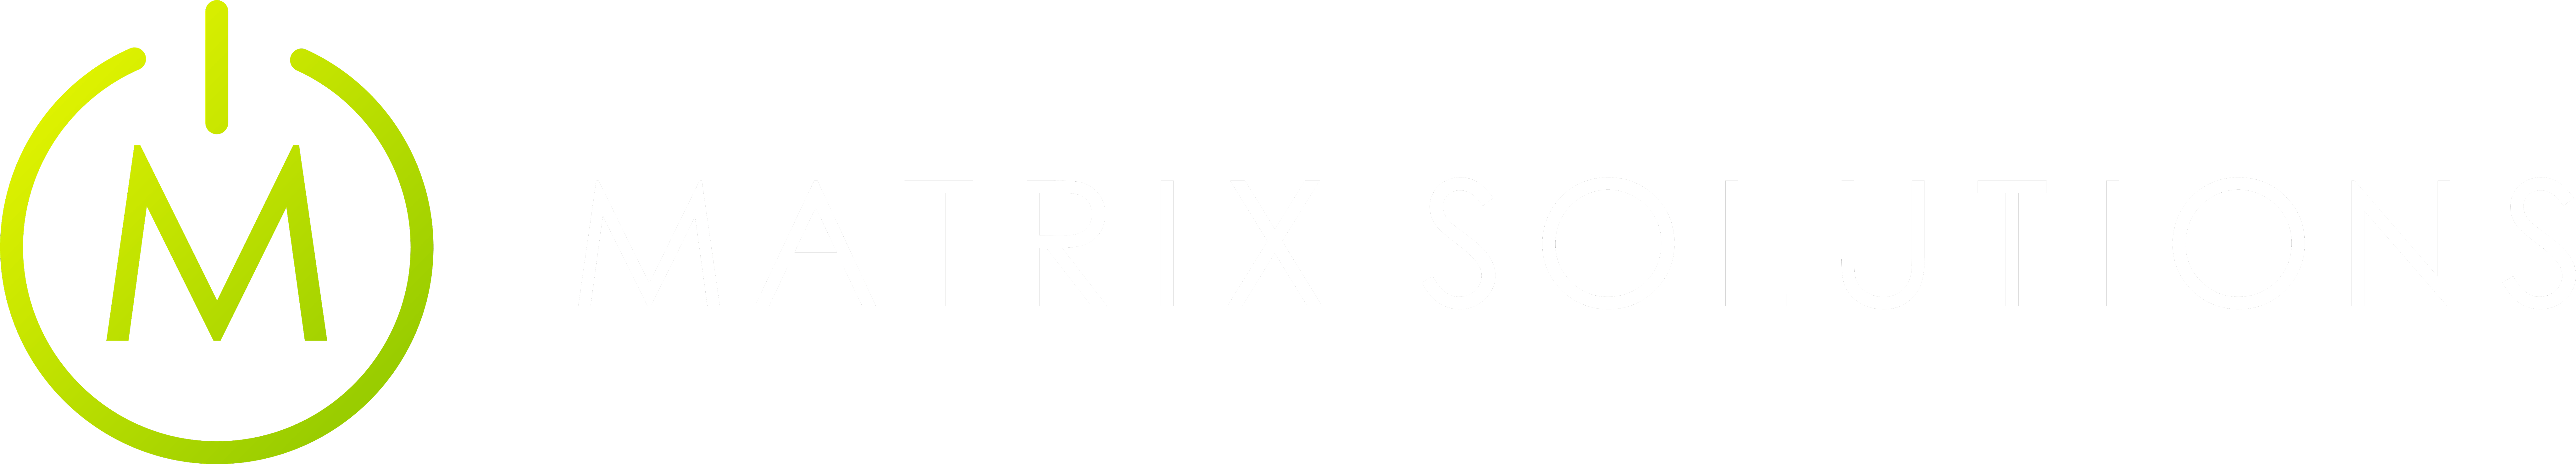 Matrix Solutions Logo - Negative